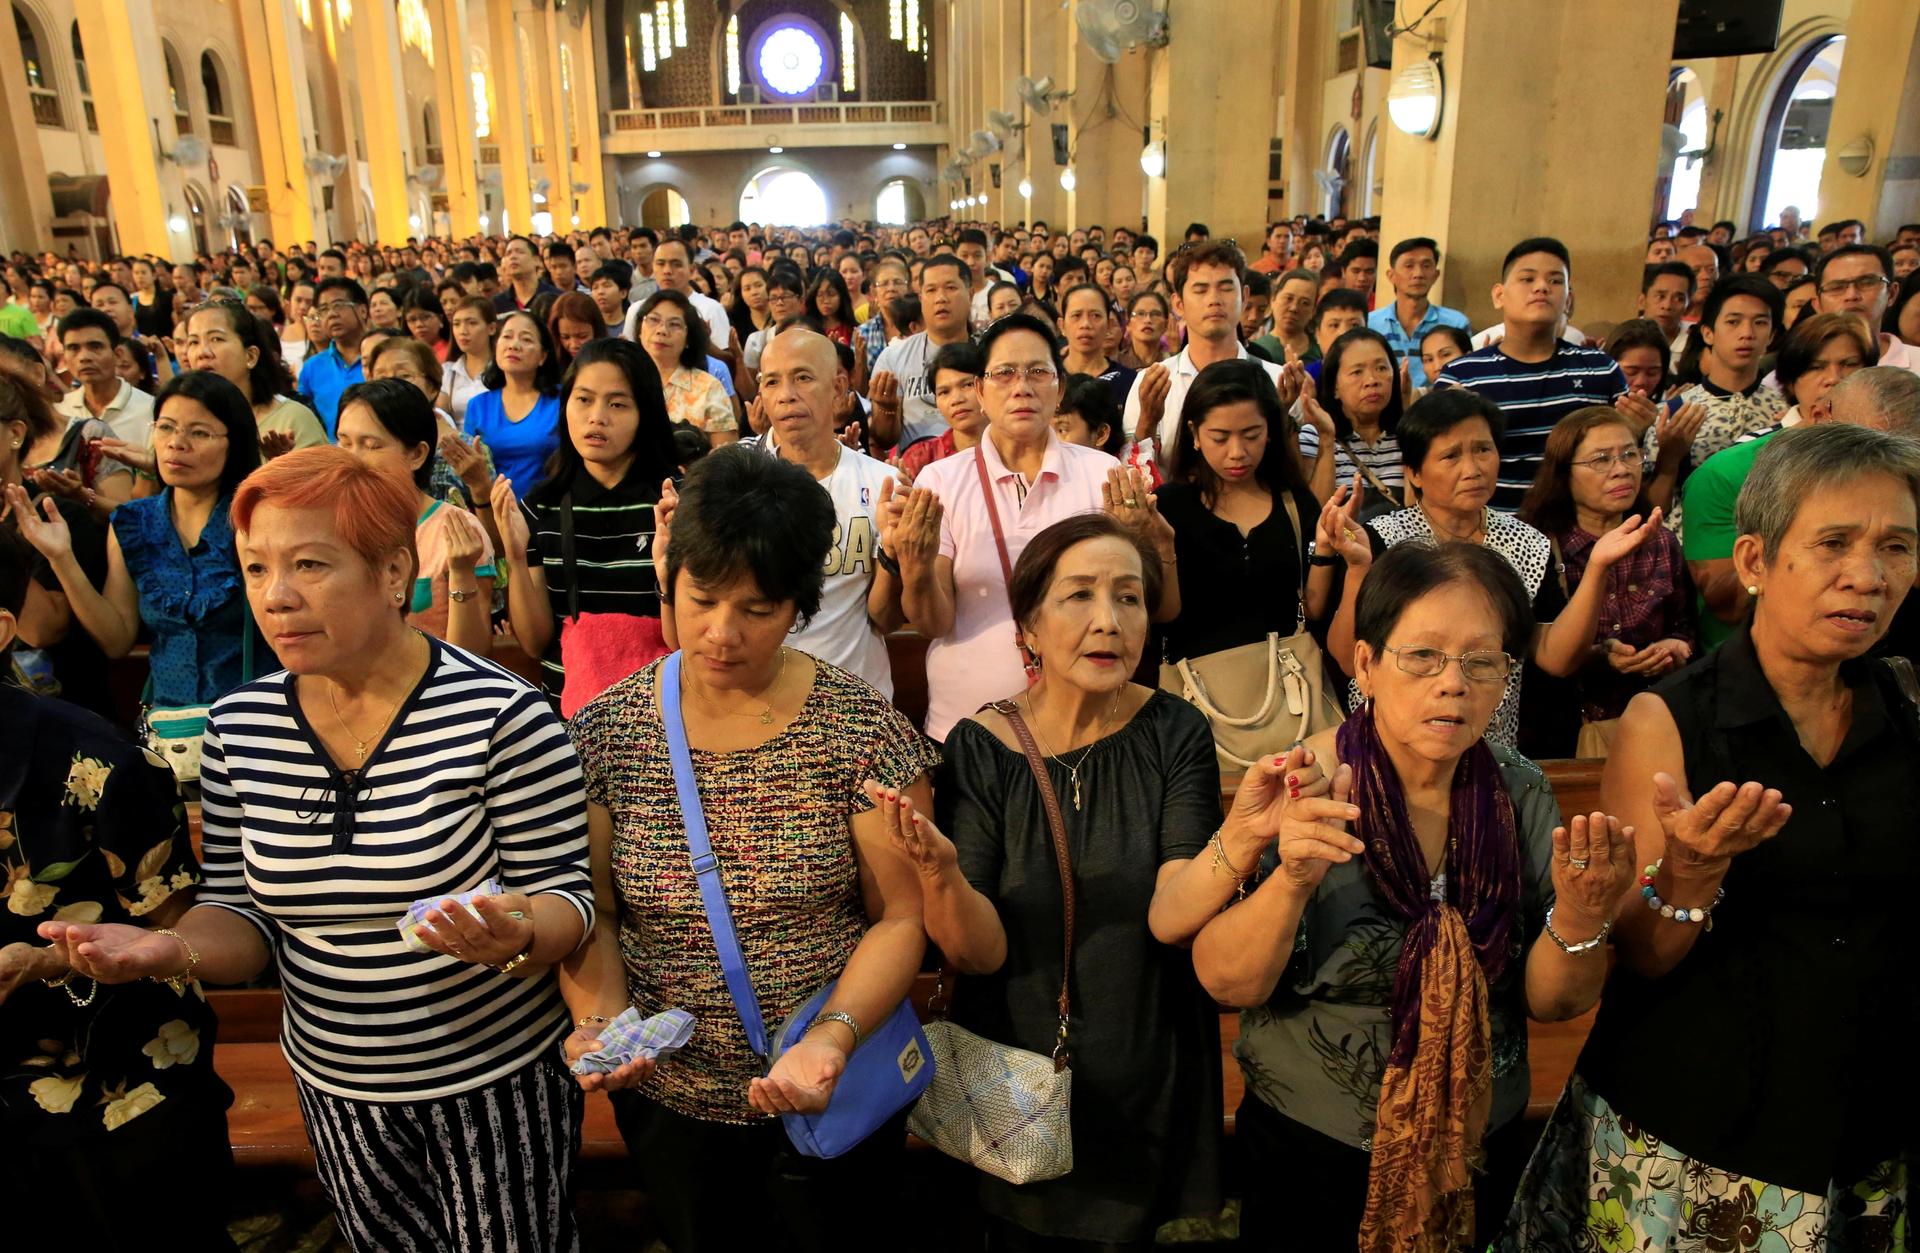 dozens of Filipino church goers praying